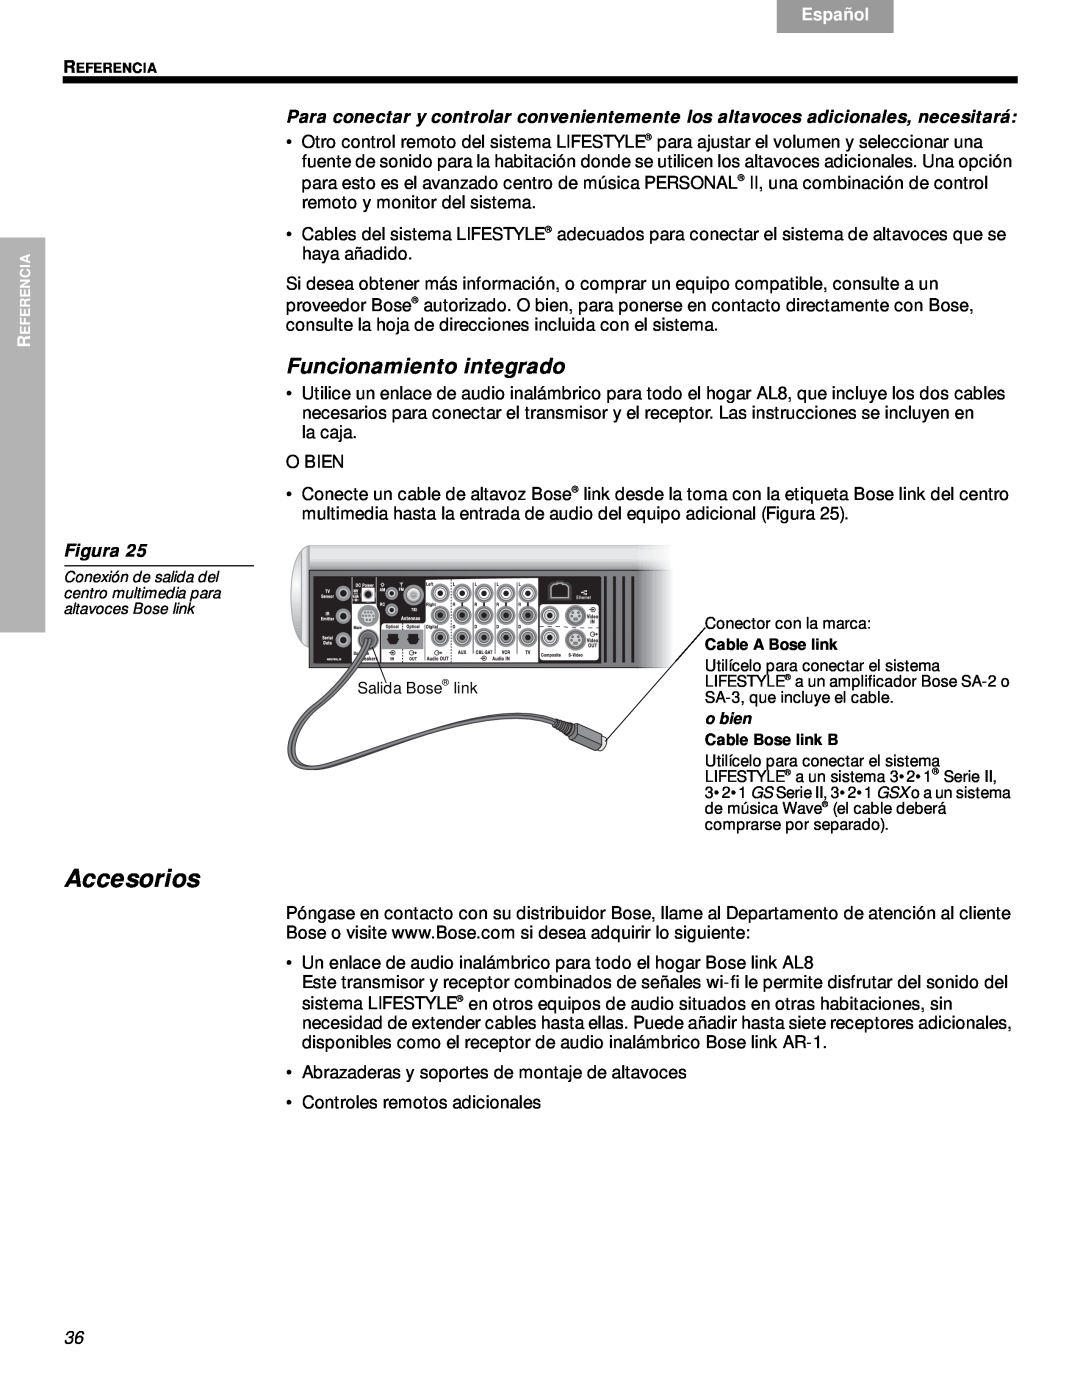 Bose VS-2 manual Accesorios, Funcionamiento integrado, Svenska, Nederlands, Français, Español, English, Figura 